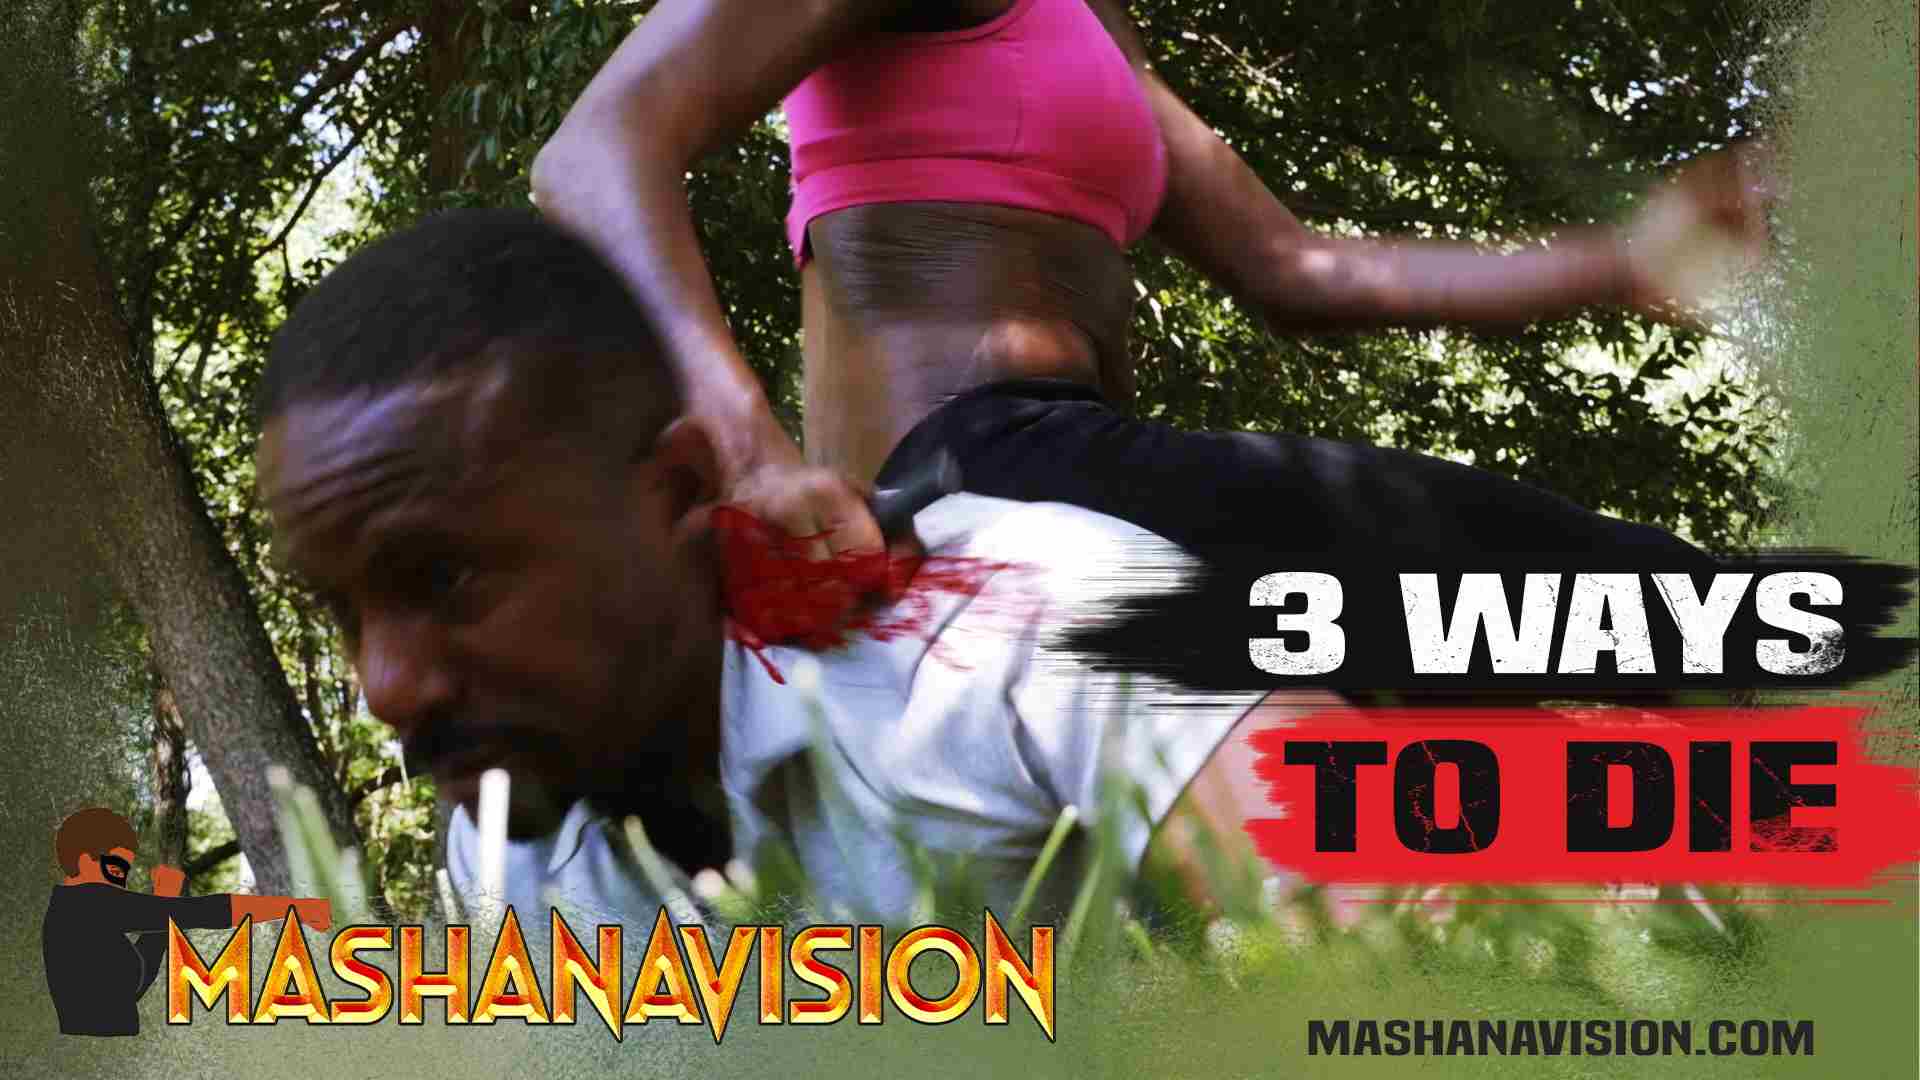 MashanaVision | Mashana Vision | Three Ways to Die